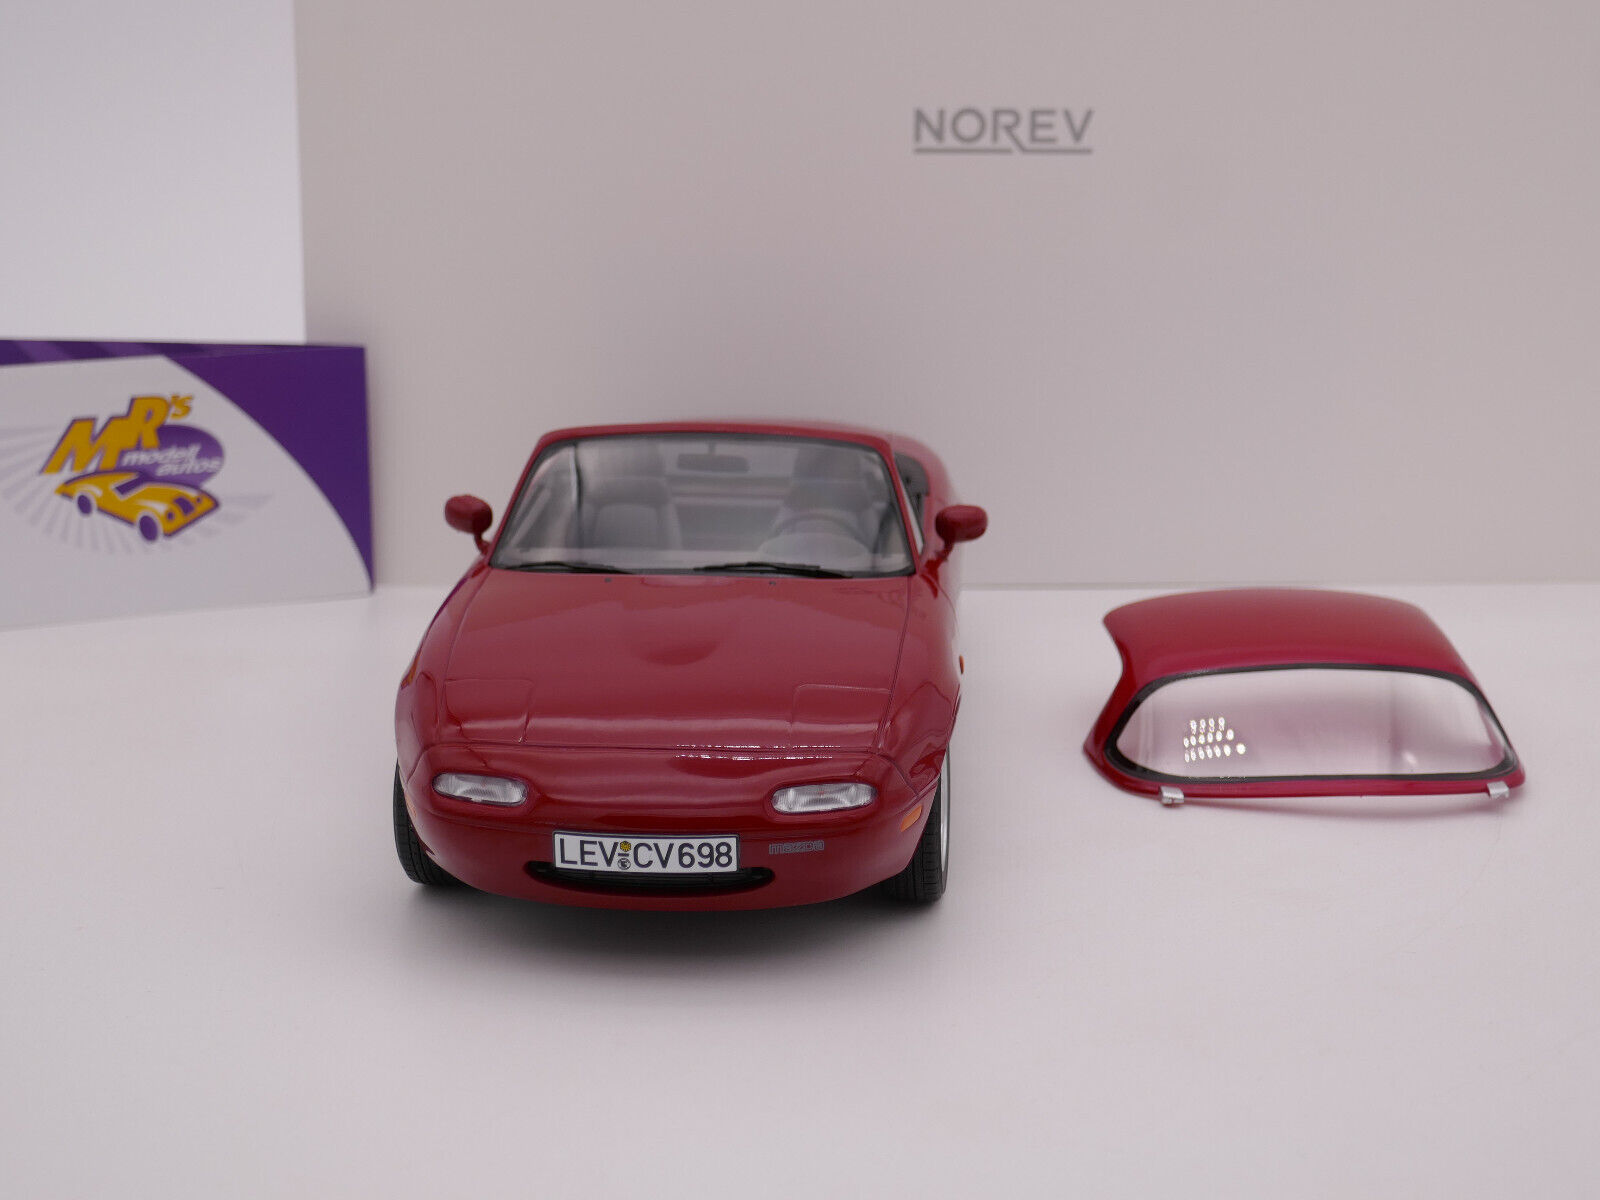 MRs Modellautos Ihr Modellauto Spezialist - Norev 188020 # Mazda MX-5  Cabriolet Baujahr 1989 in  rot  1:18